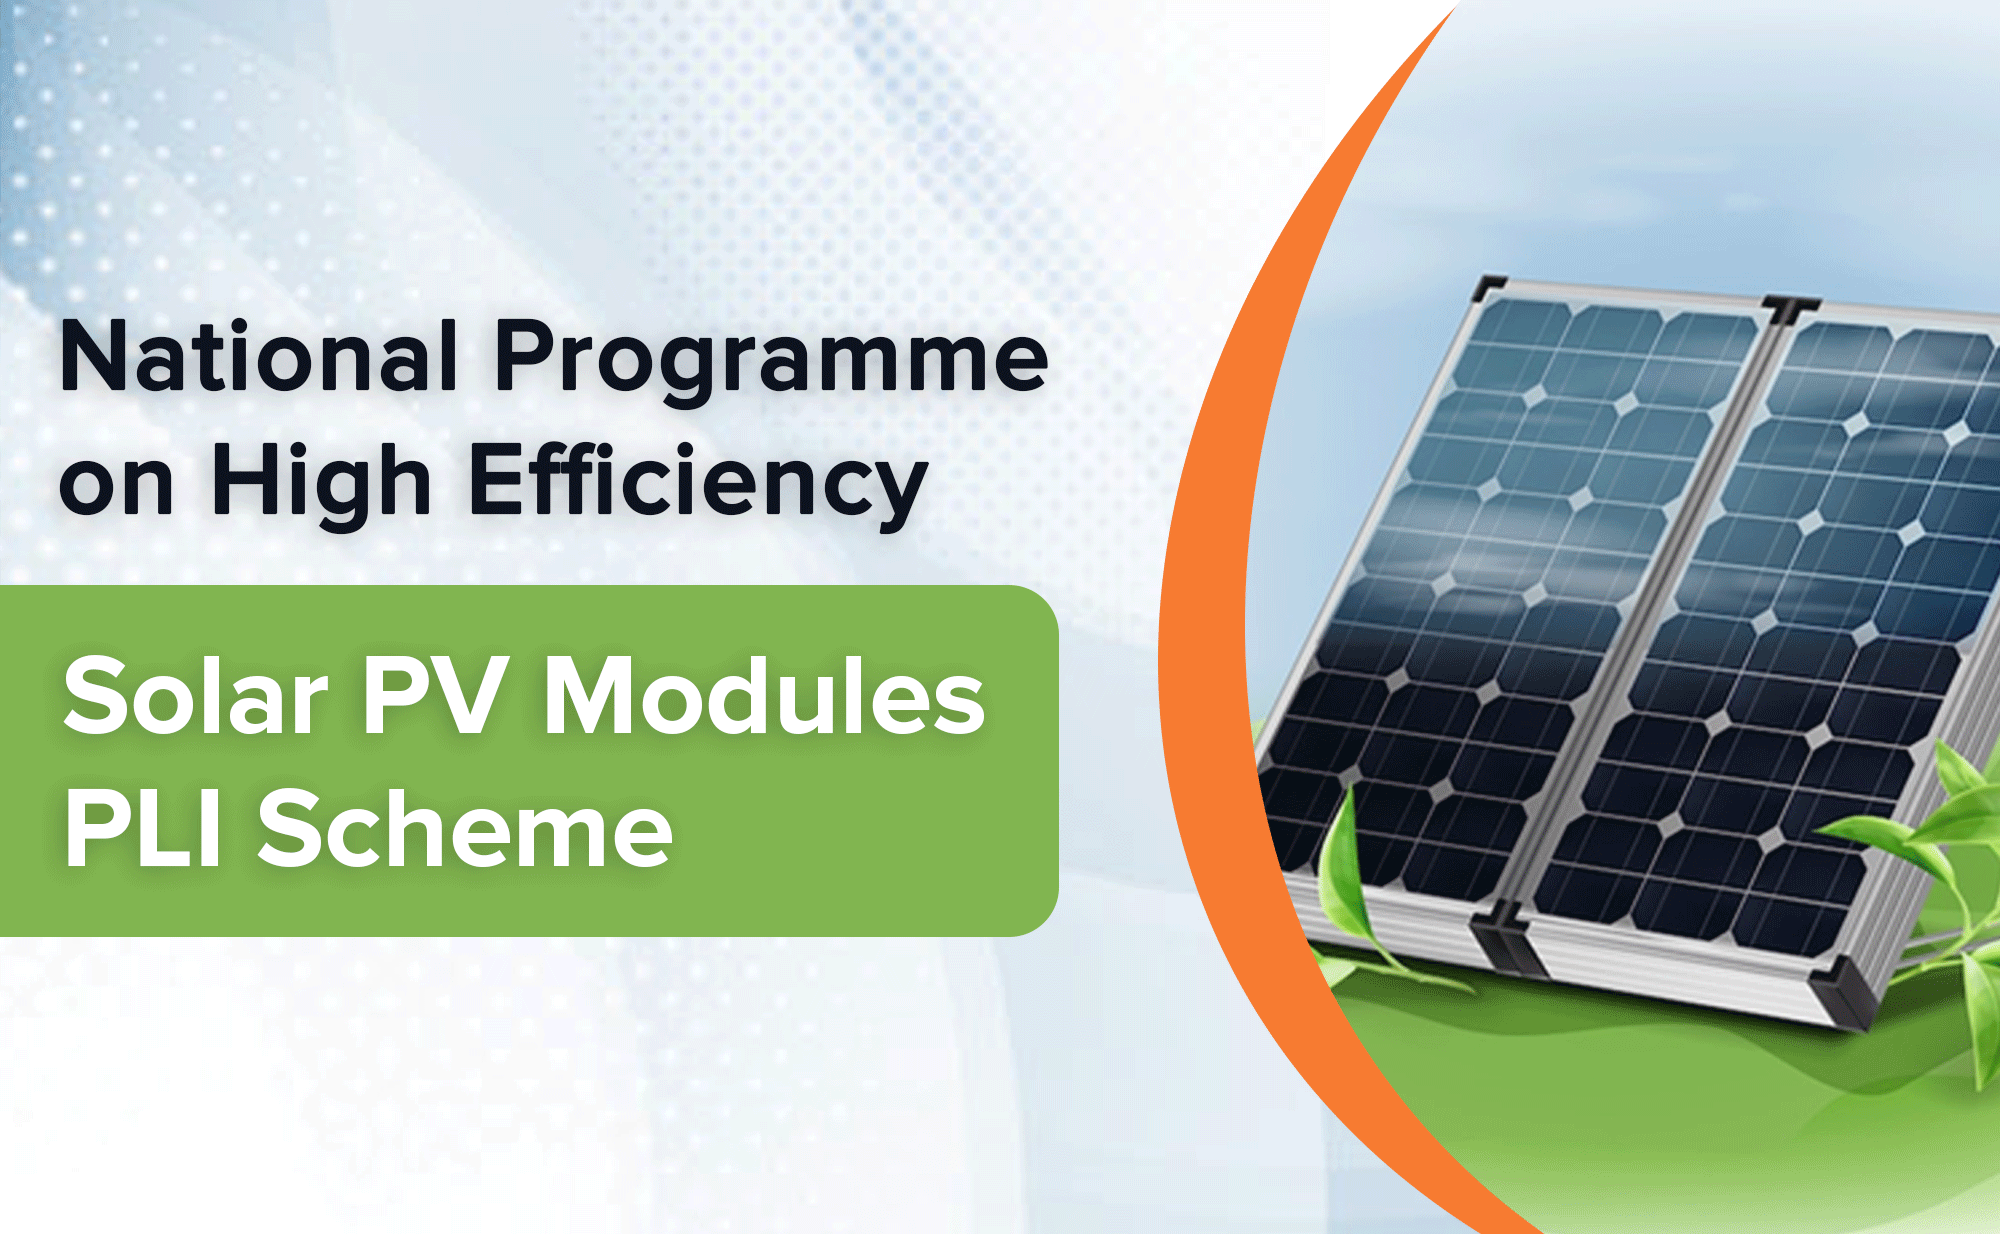 Solar PV Module PLI Scheme